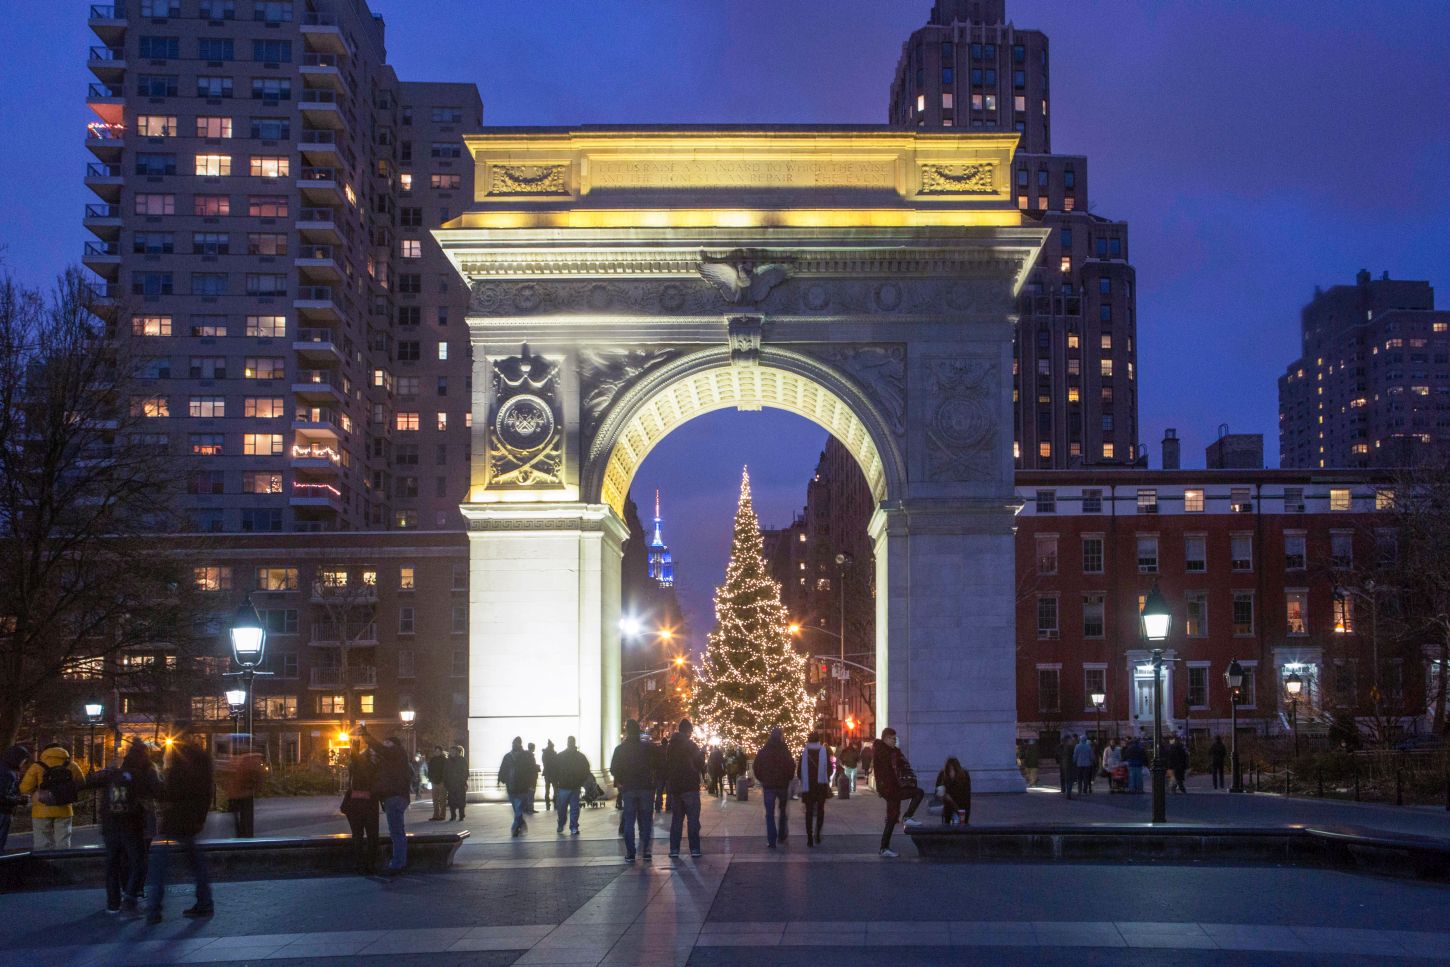 Weniger bekannt: der Weihnachtsbaum am Washington Square Park